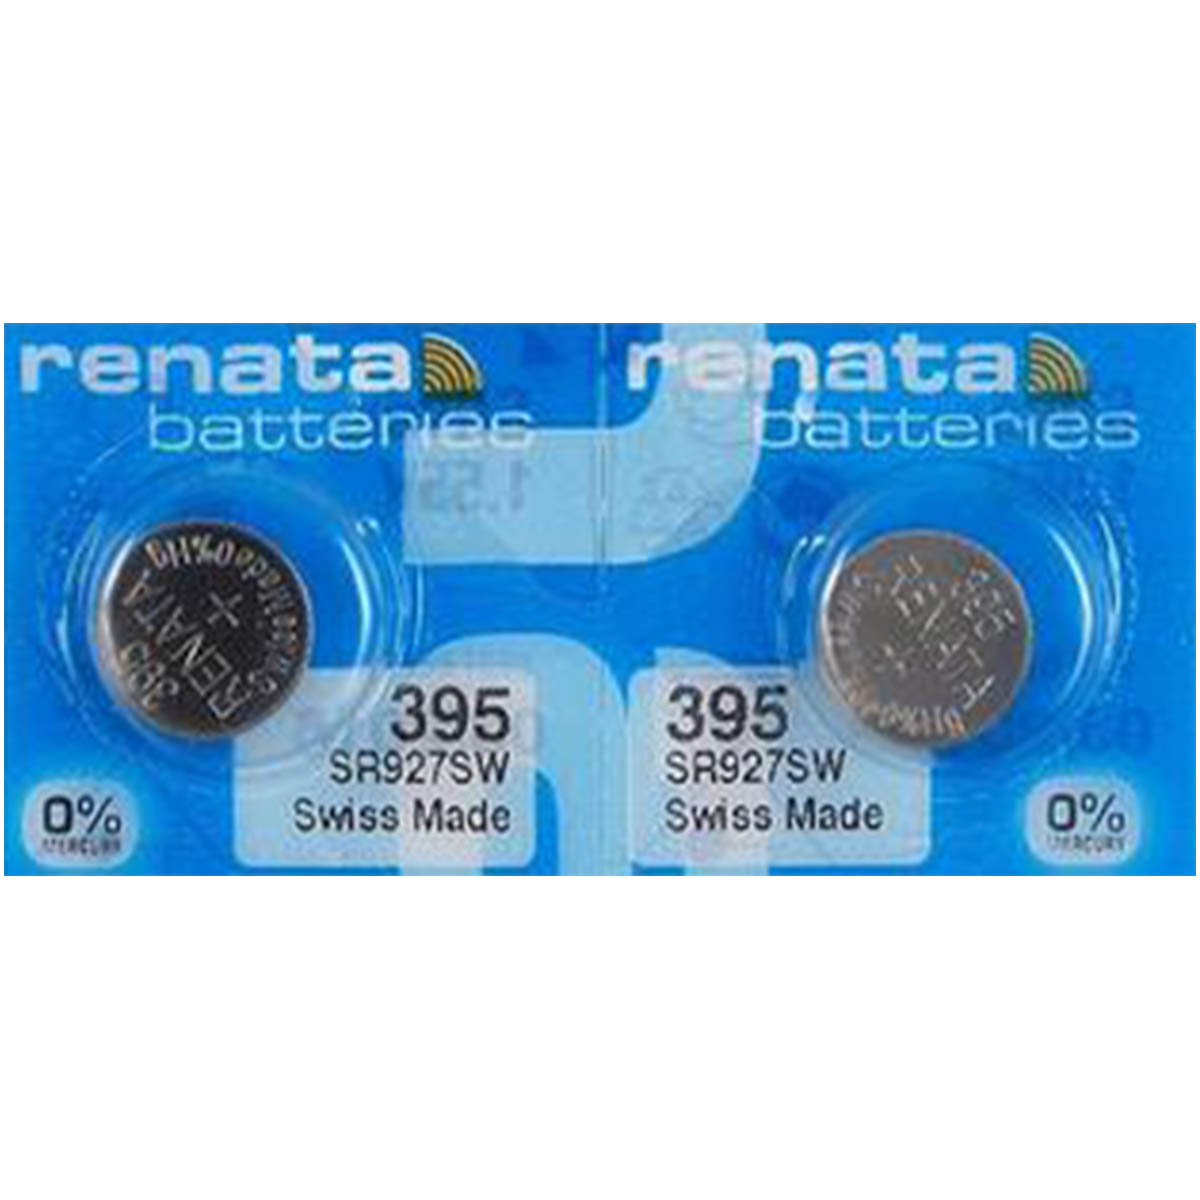 Renata 395 Battery (SR927SW) Silver Oxide 1.55V (1PC)